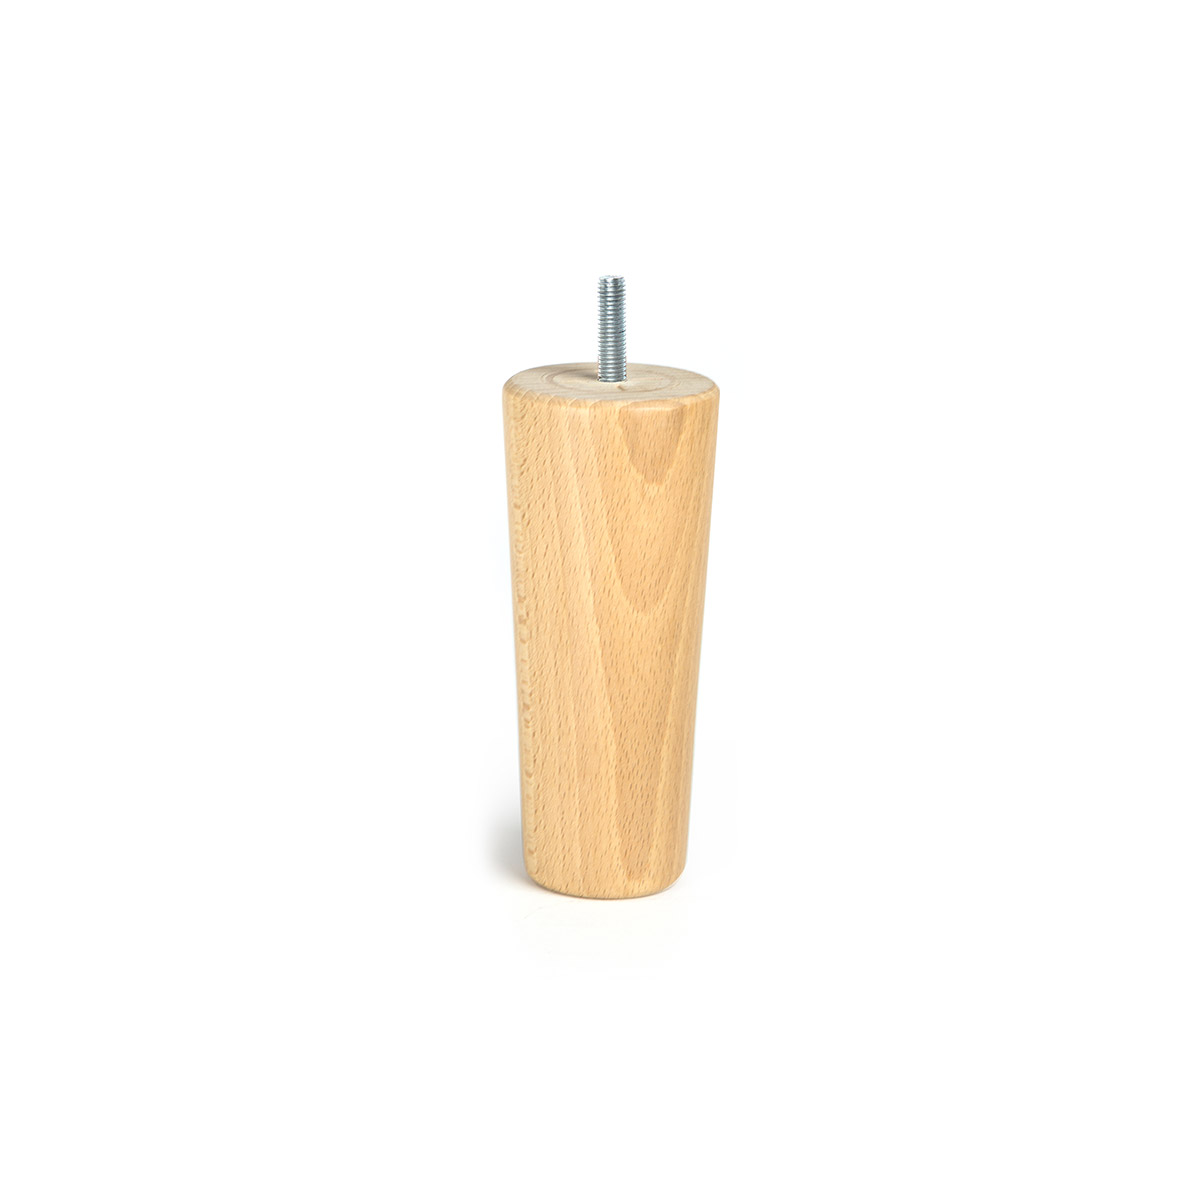 Pied conique en bois d'une hauteur de 140 mm et finition brute. Dimensions: 64x64x140 mm